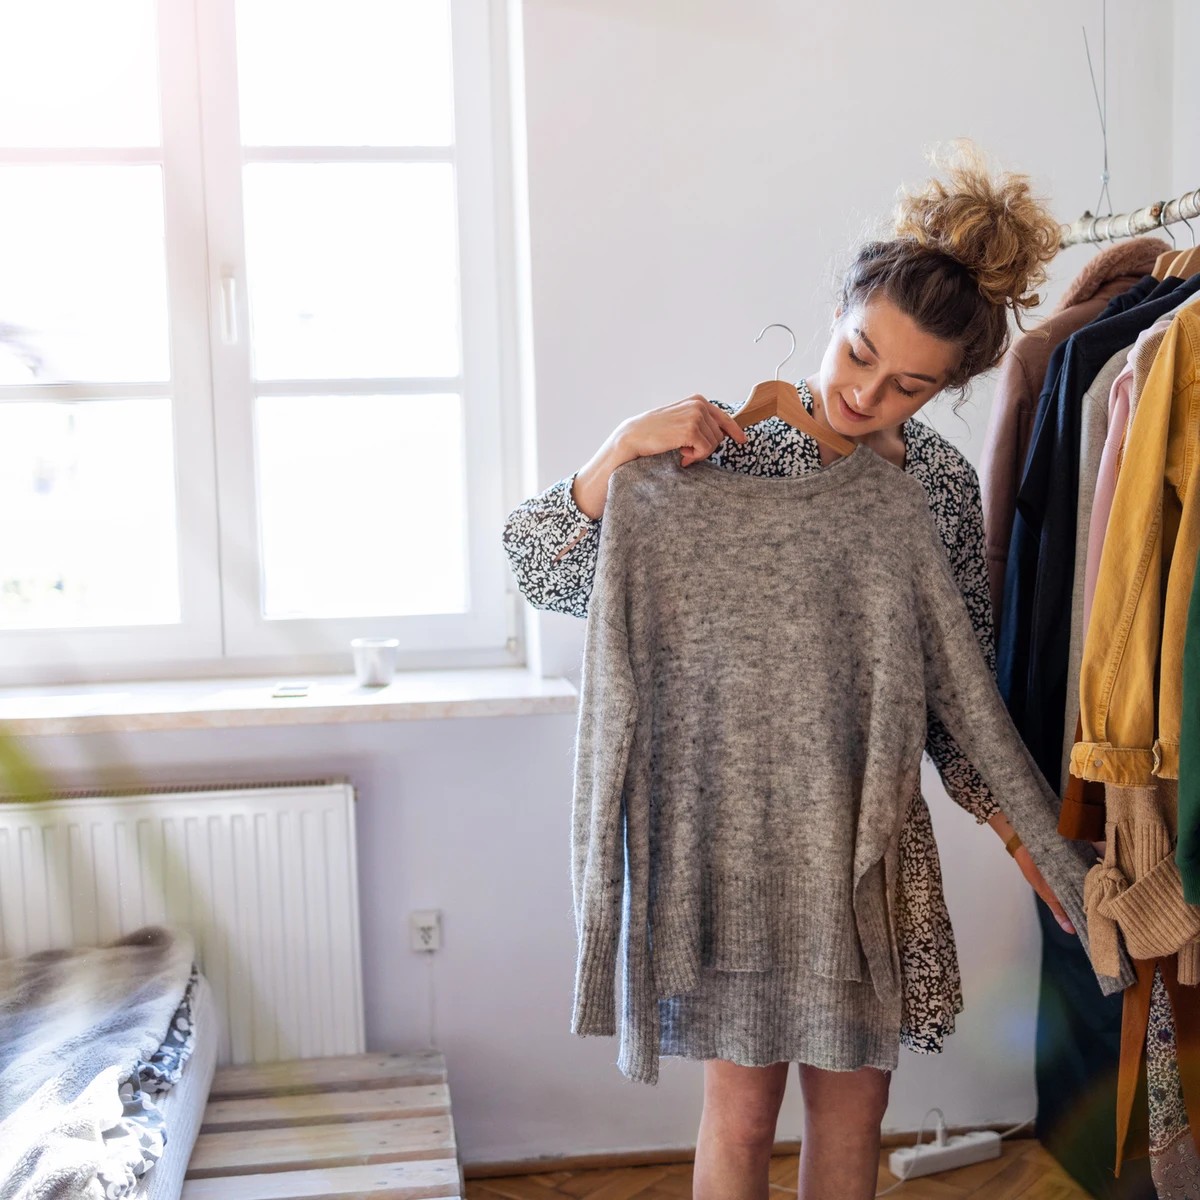 Cómo encoger ropa que te ha quedado grande para volver a ponértela - VÍDEO